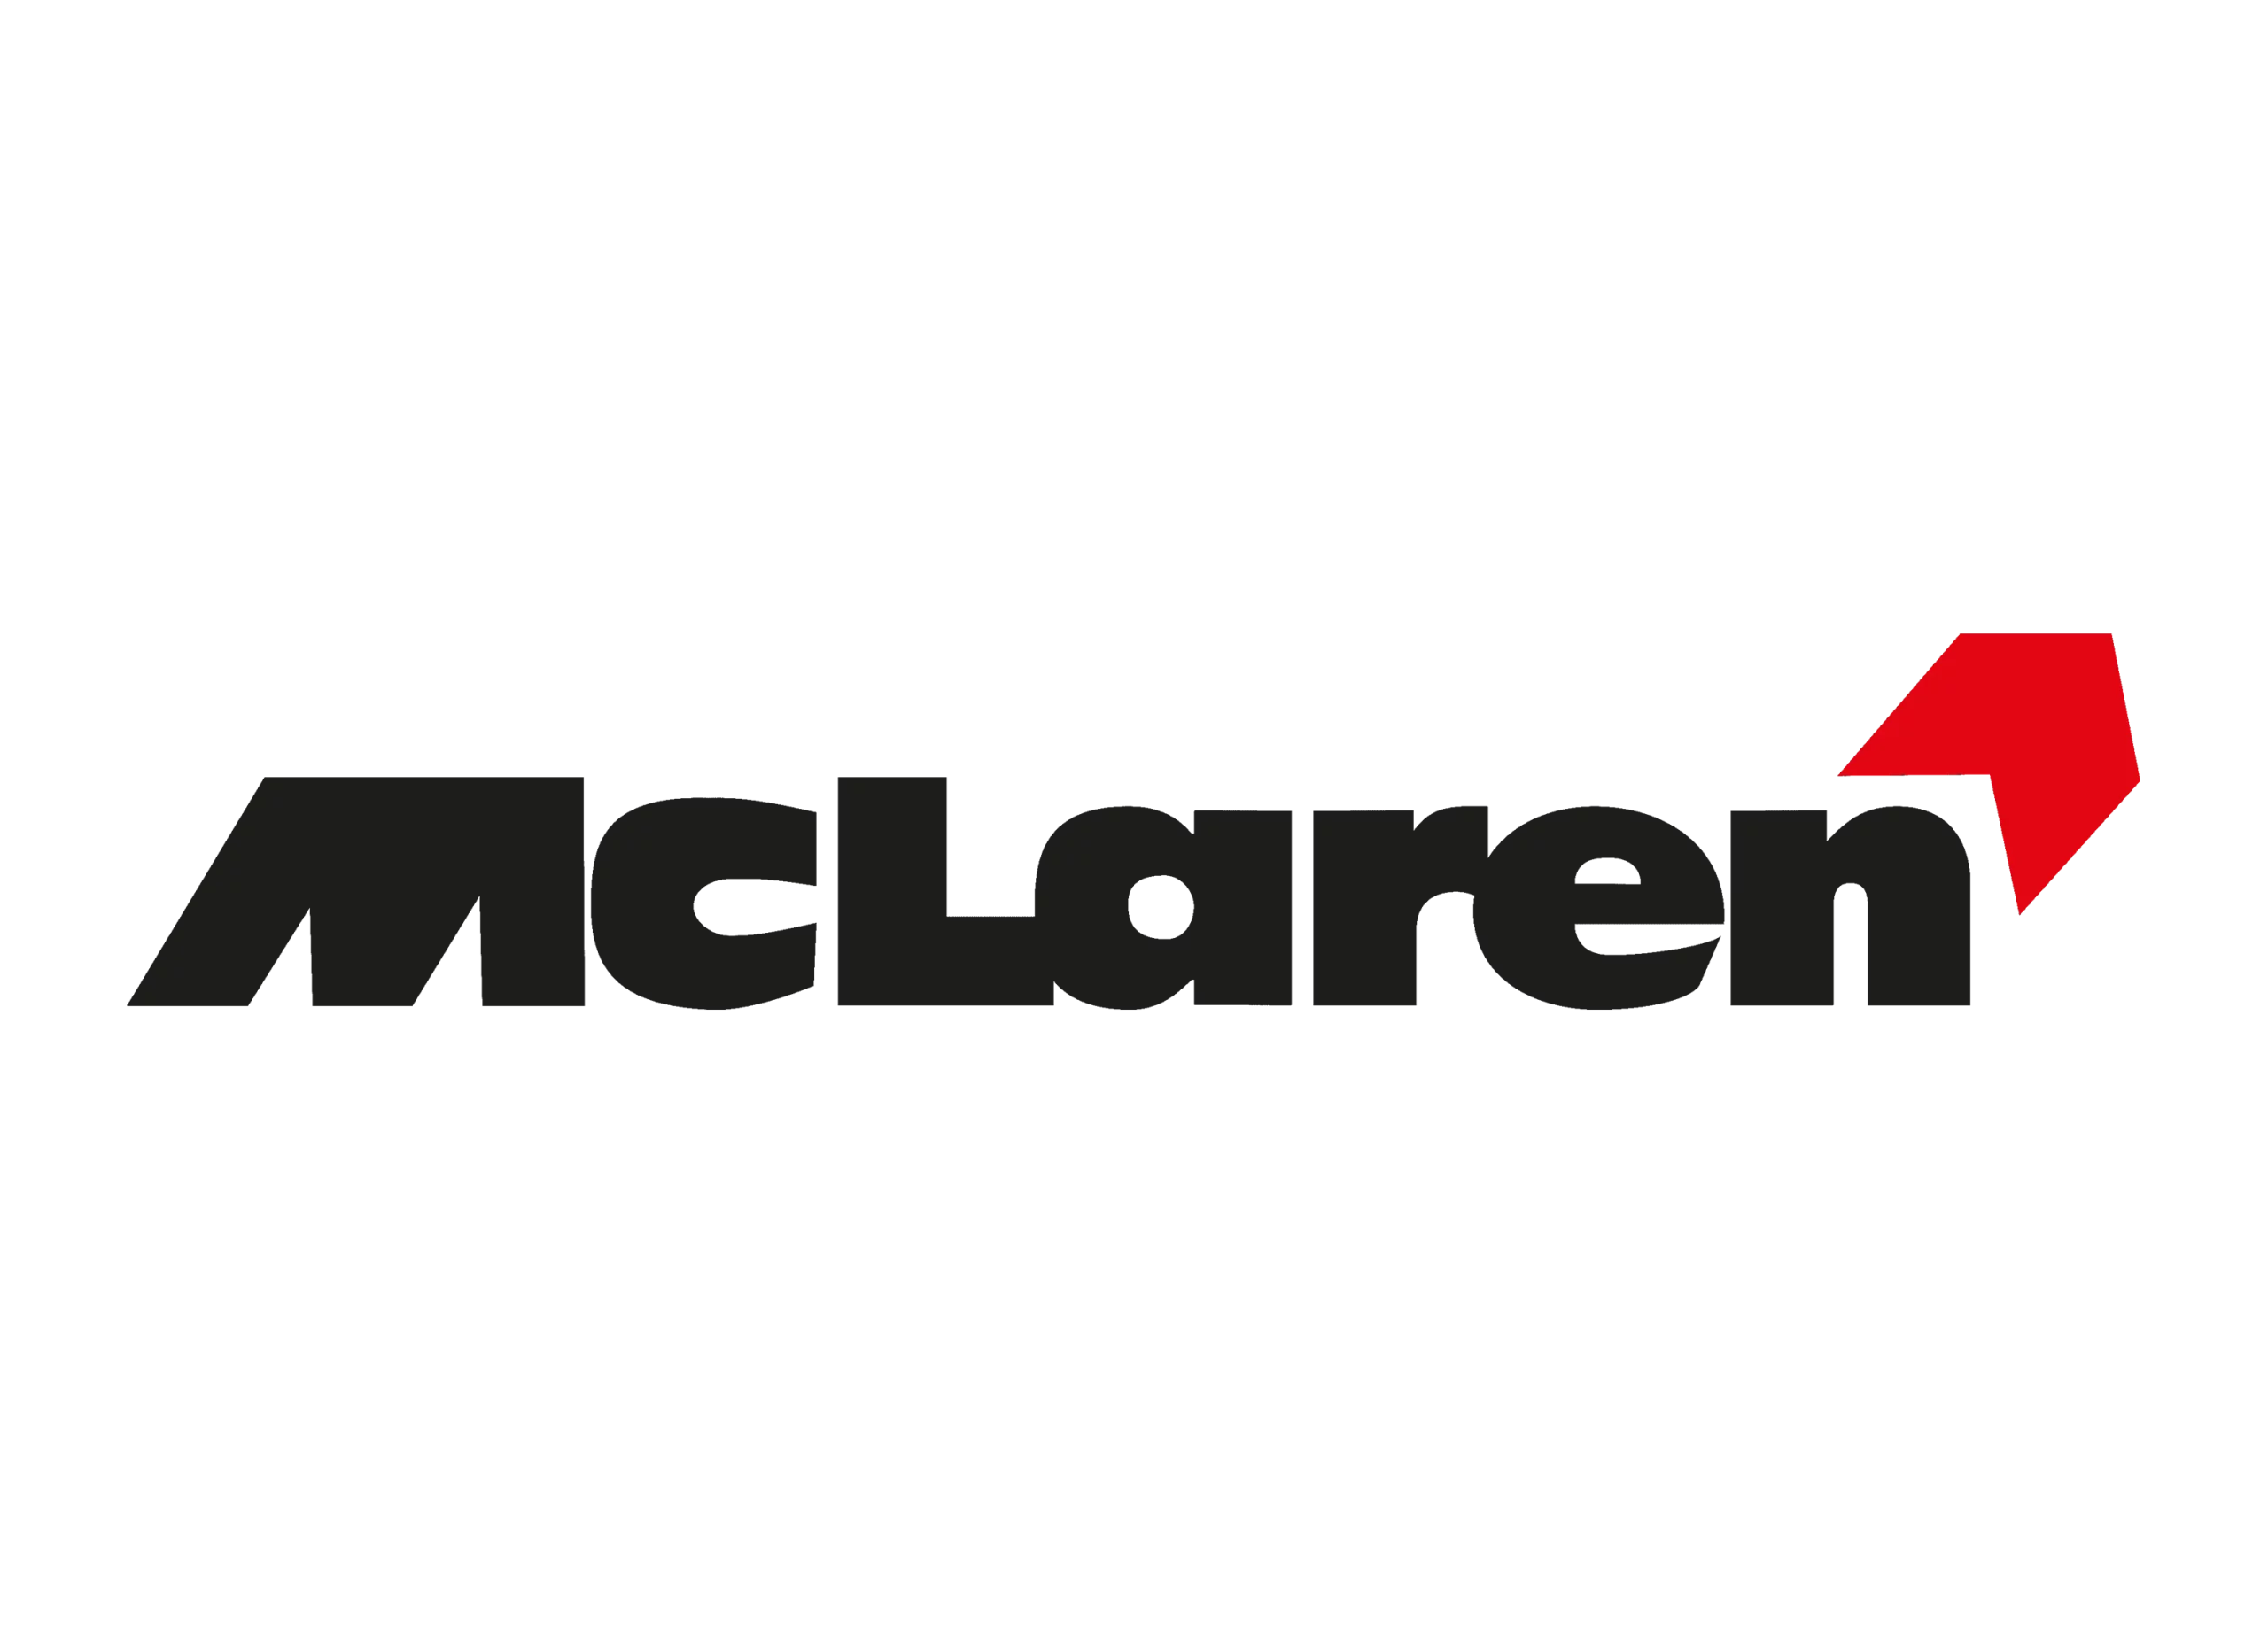 McLaren logo 1991-1998